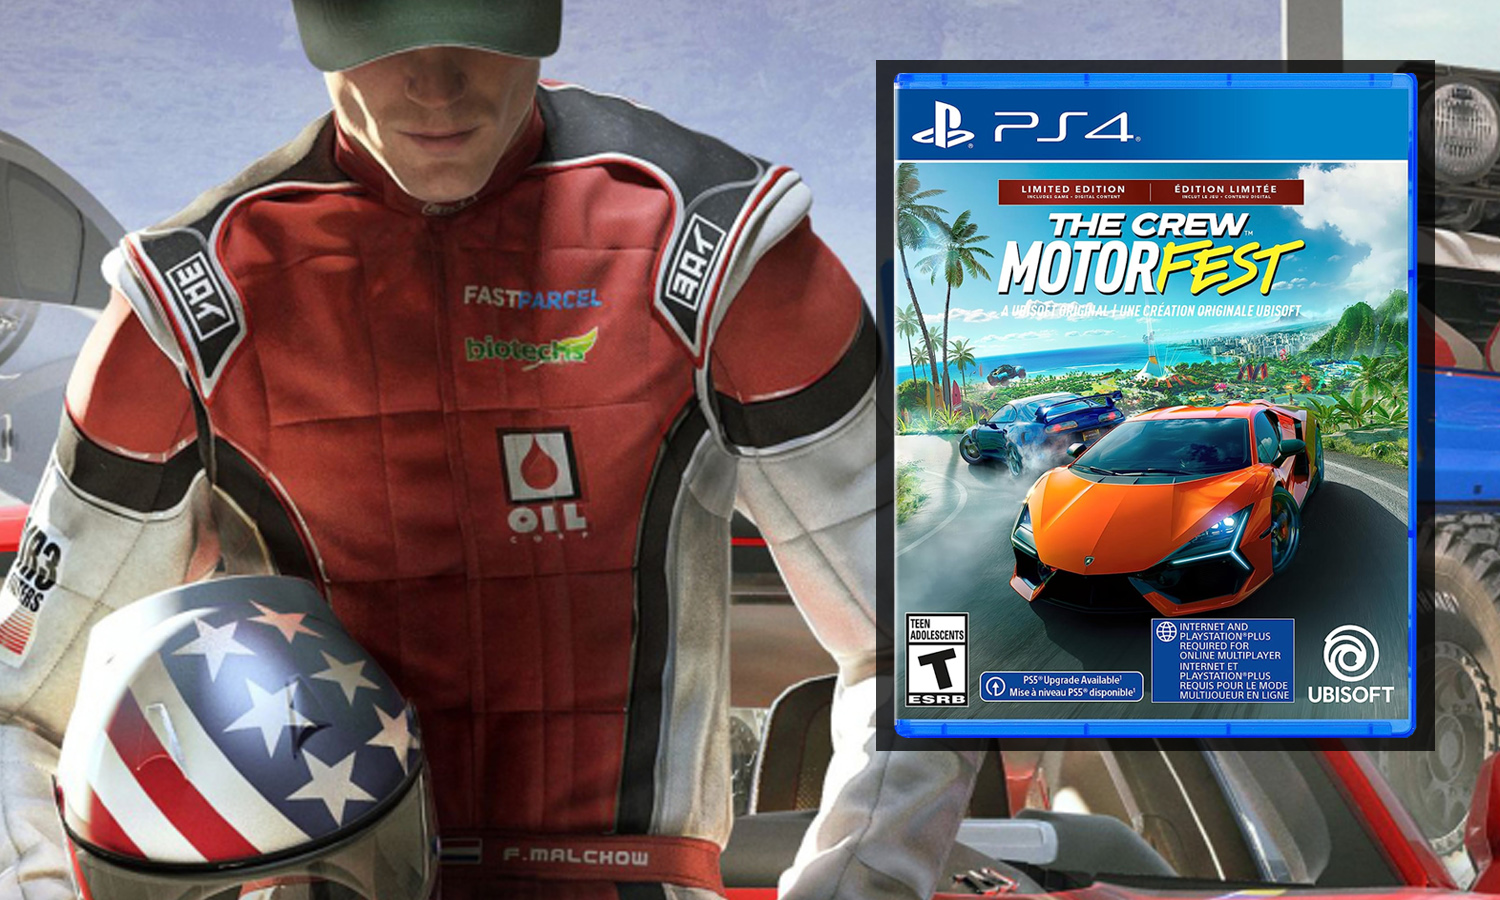 The Crew Motorfest PS4 - Jeux vidéo - Achat & prix